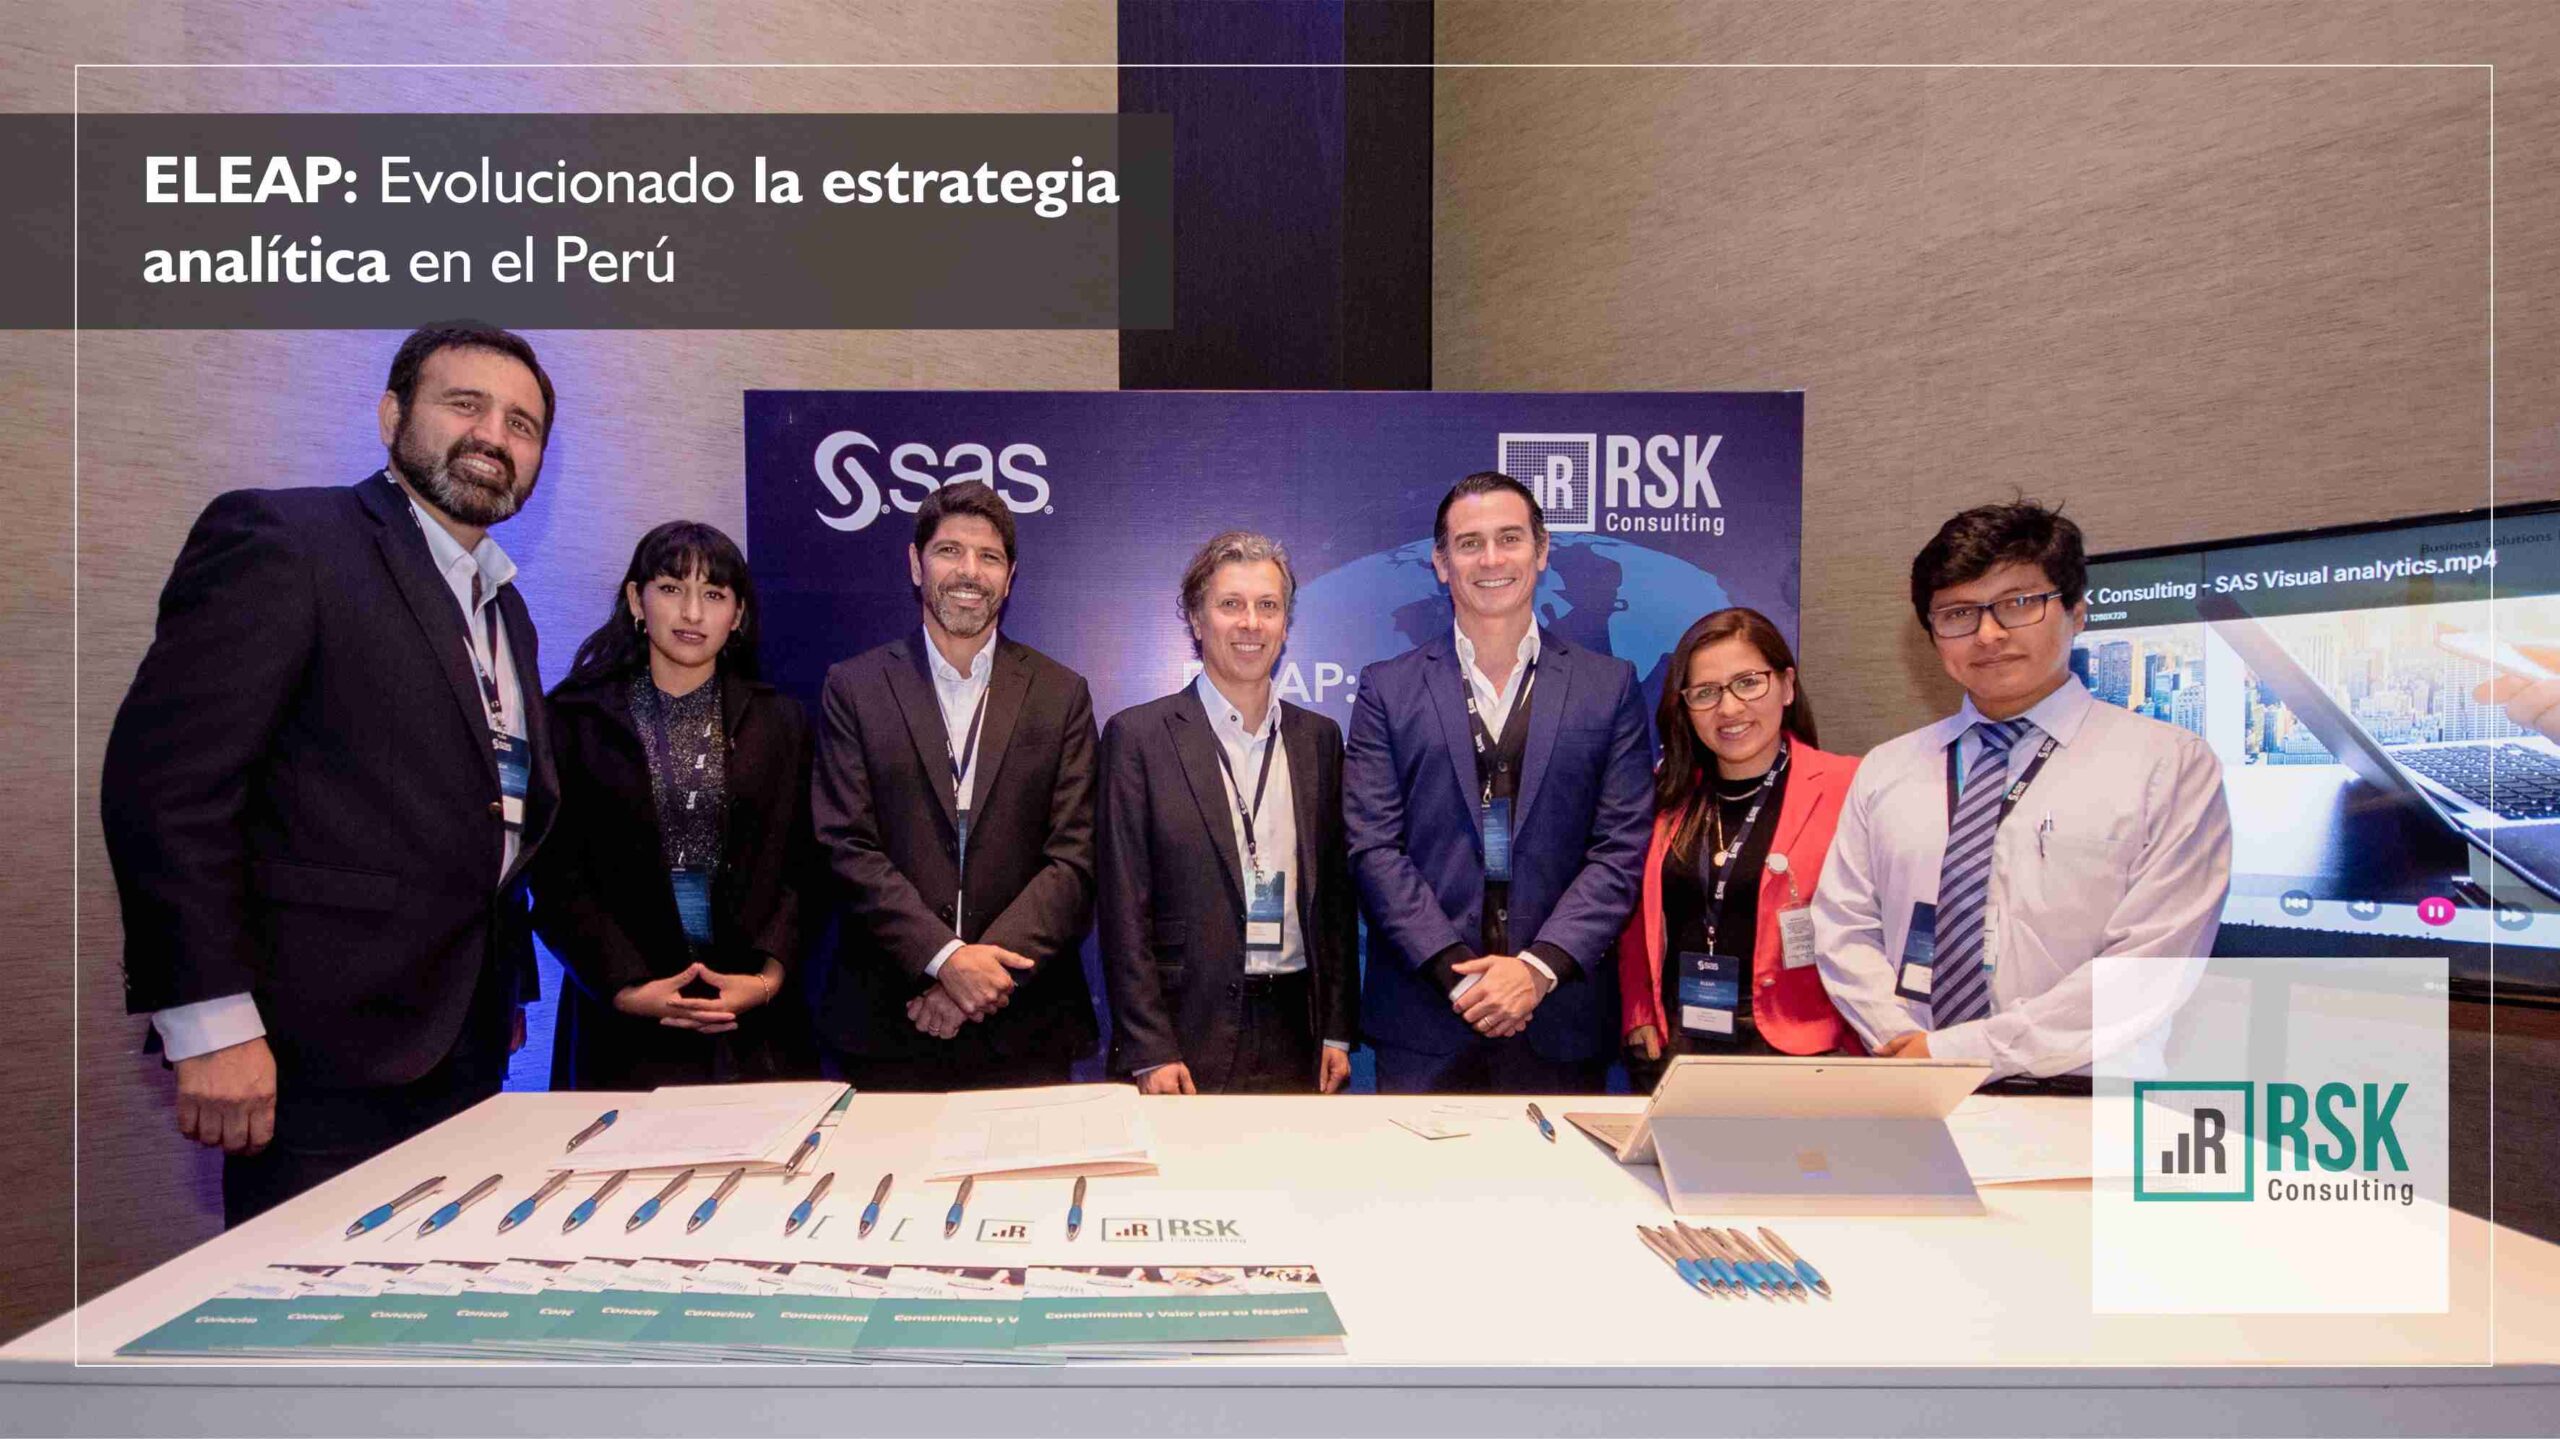 ELEAP: Evolucionado la estrategia analítica en el Perú